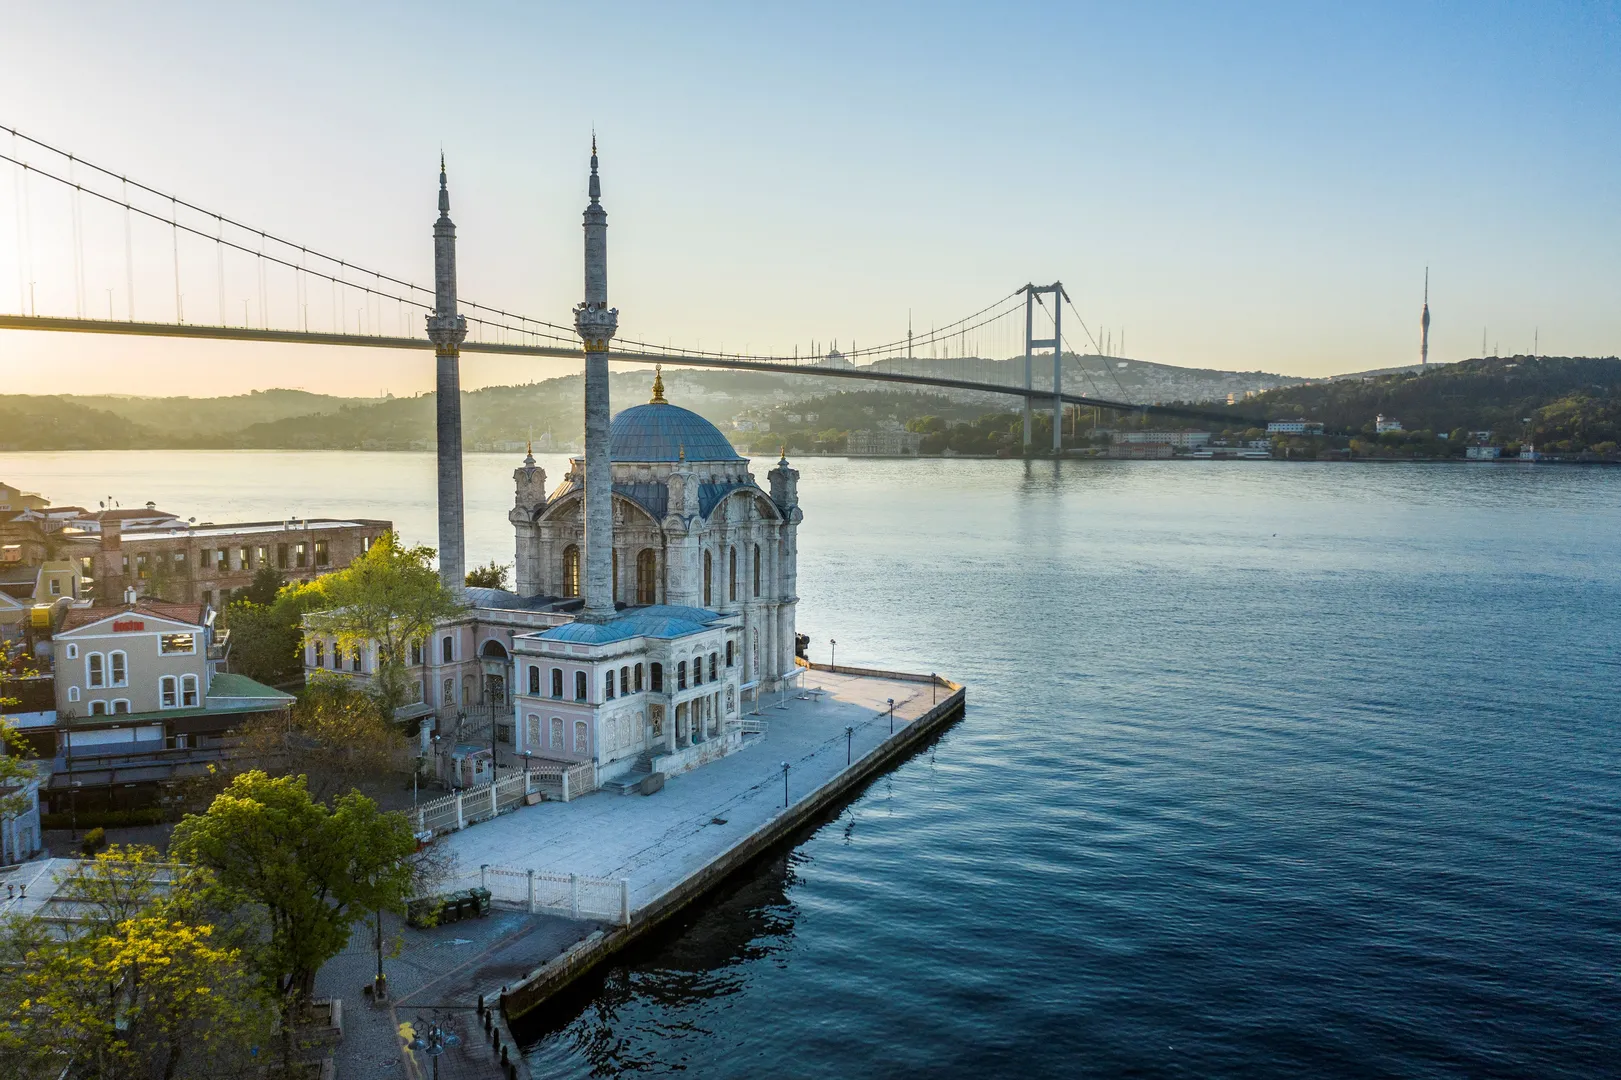 Platforma wizowa dla cyfrowych nomadów w Türkiye (Turcji) jest już dostępna online